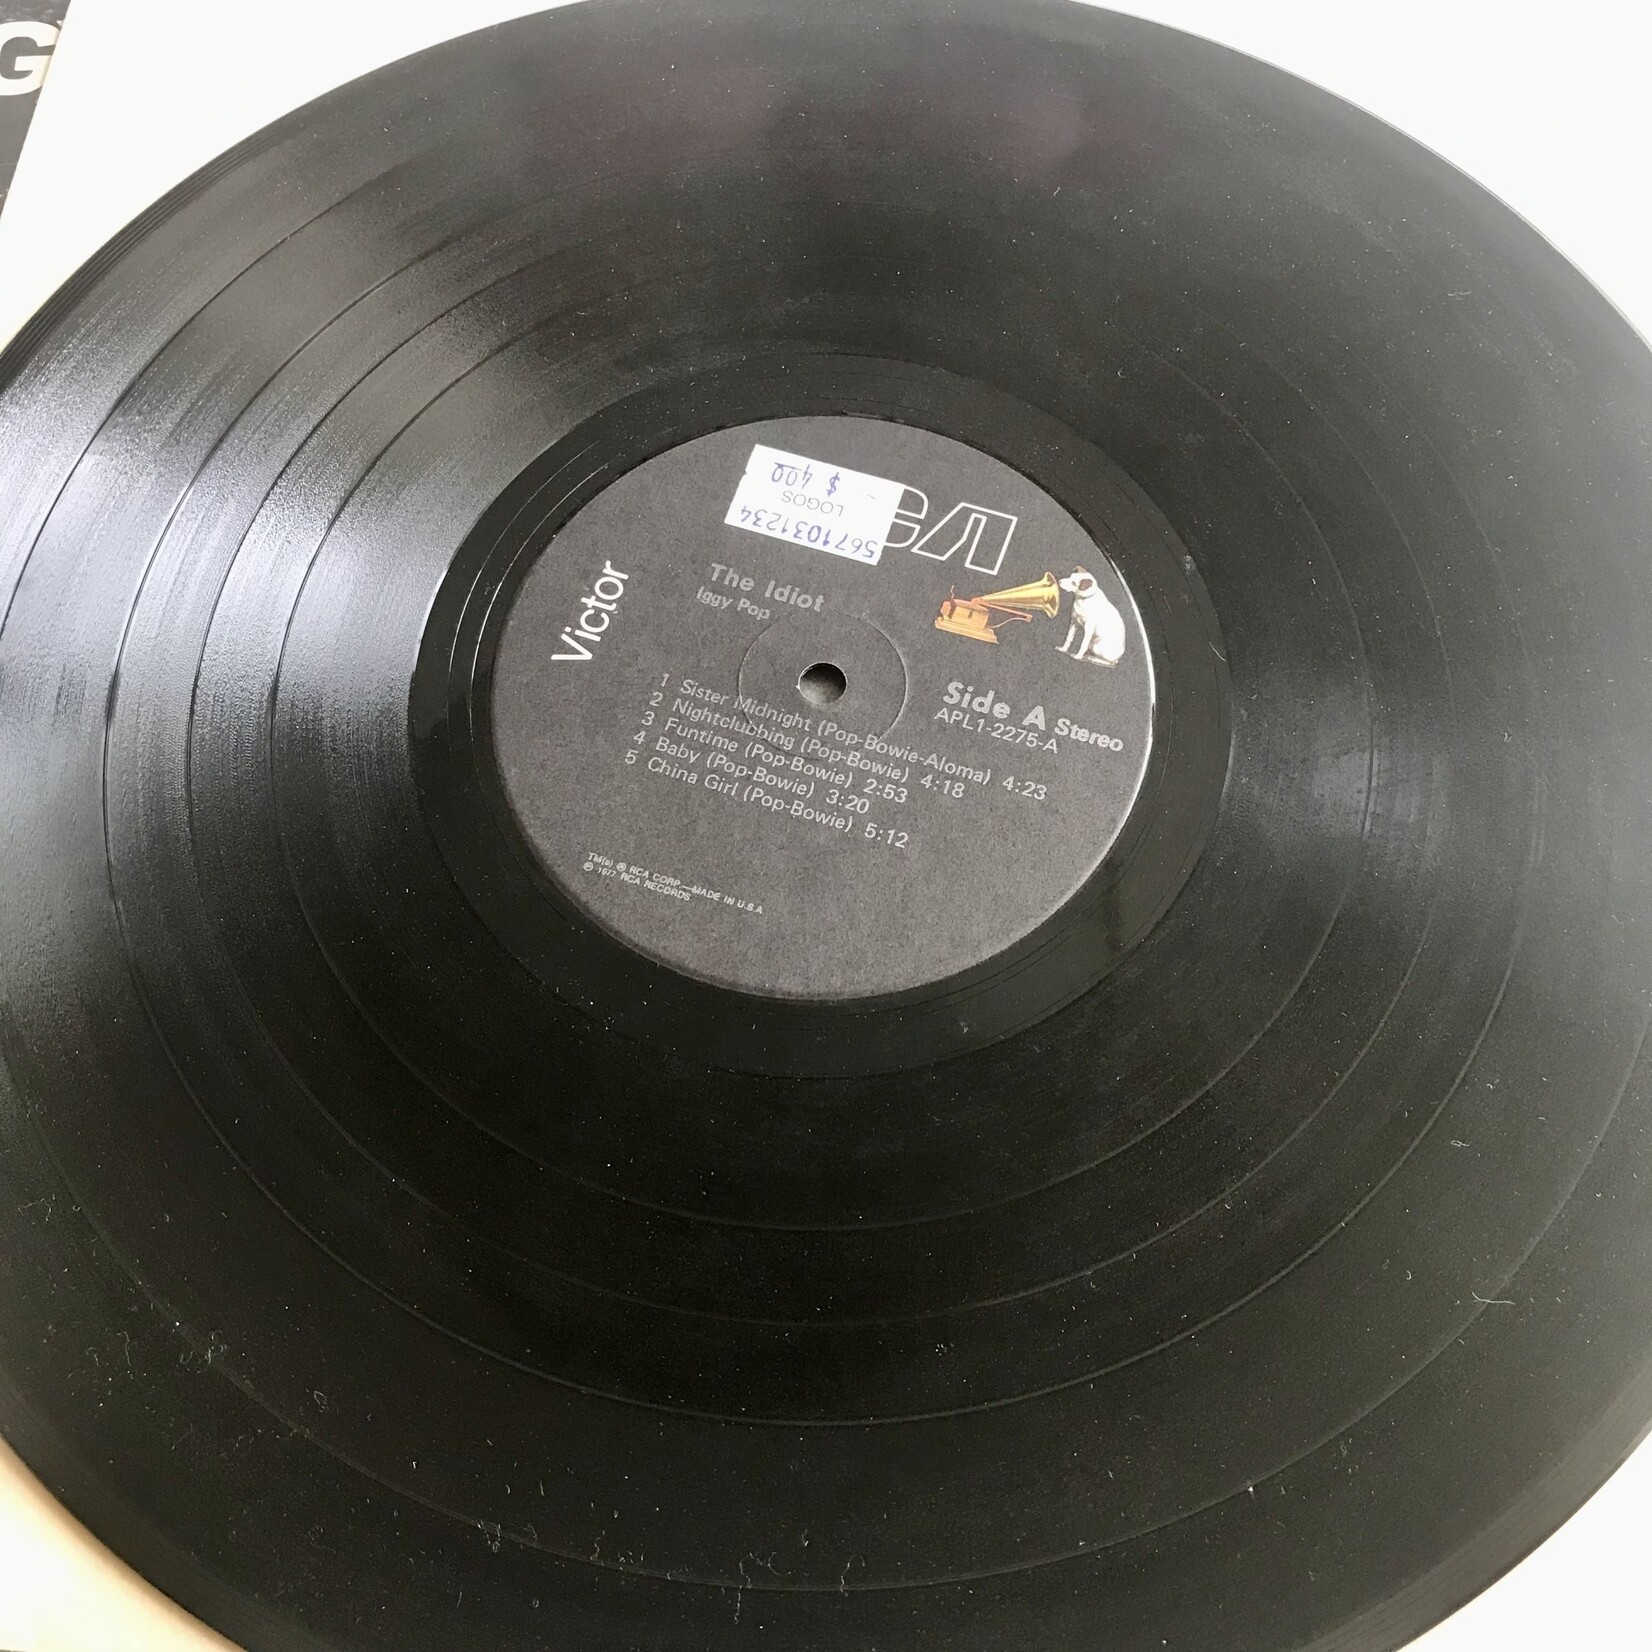 Iggy Pop - The Idiot - Vinyl LP (USED)